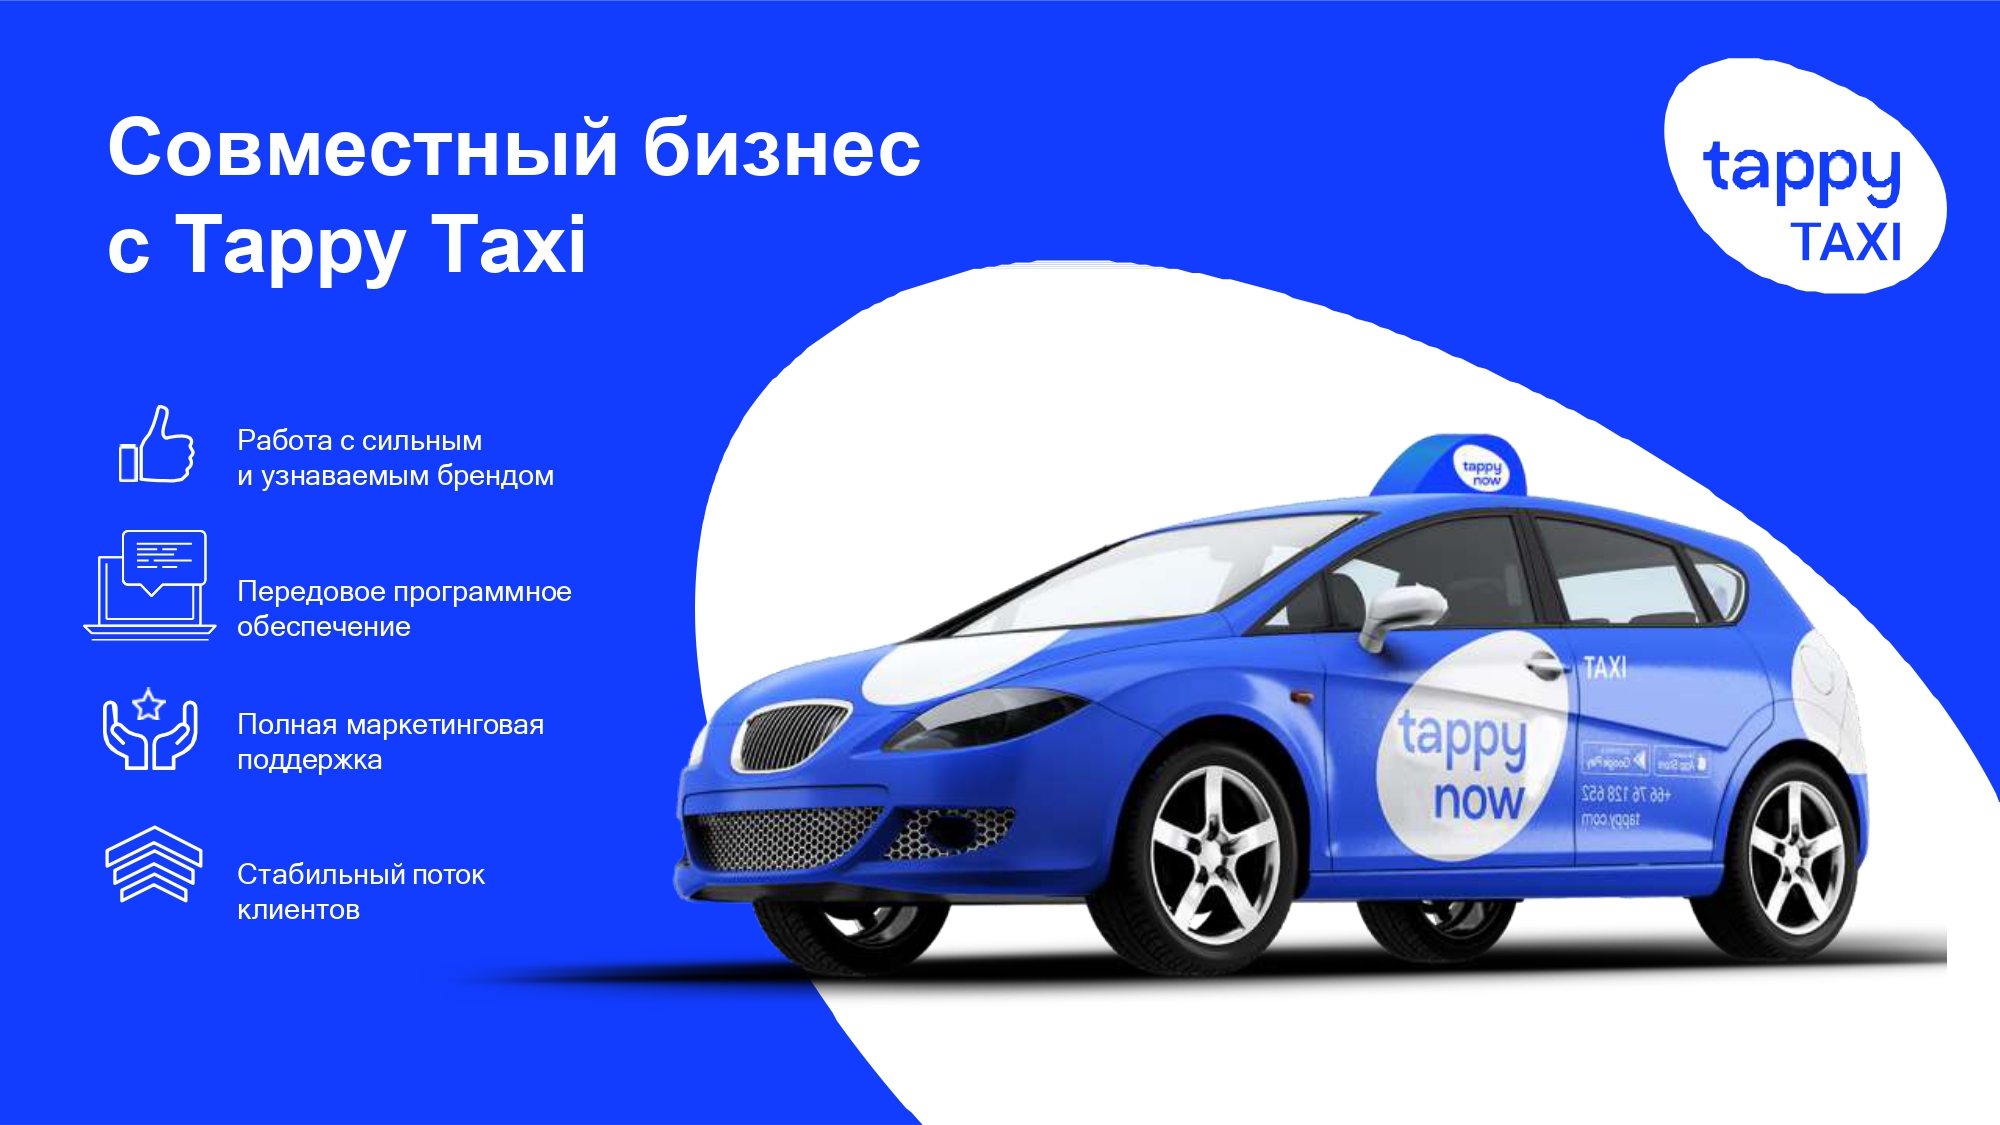 Tappy Taxi франшиза или стать нашим партнером - фотография